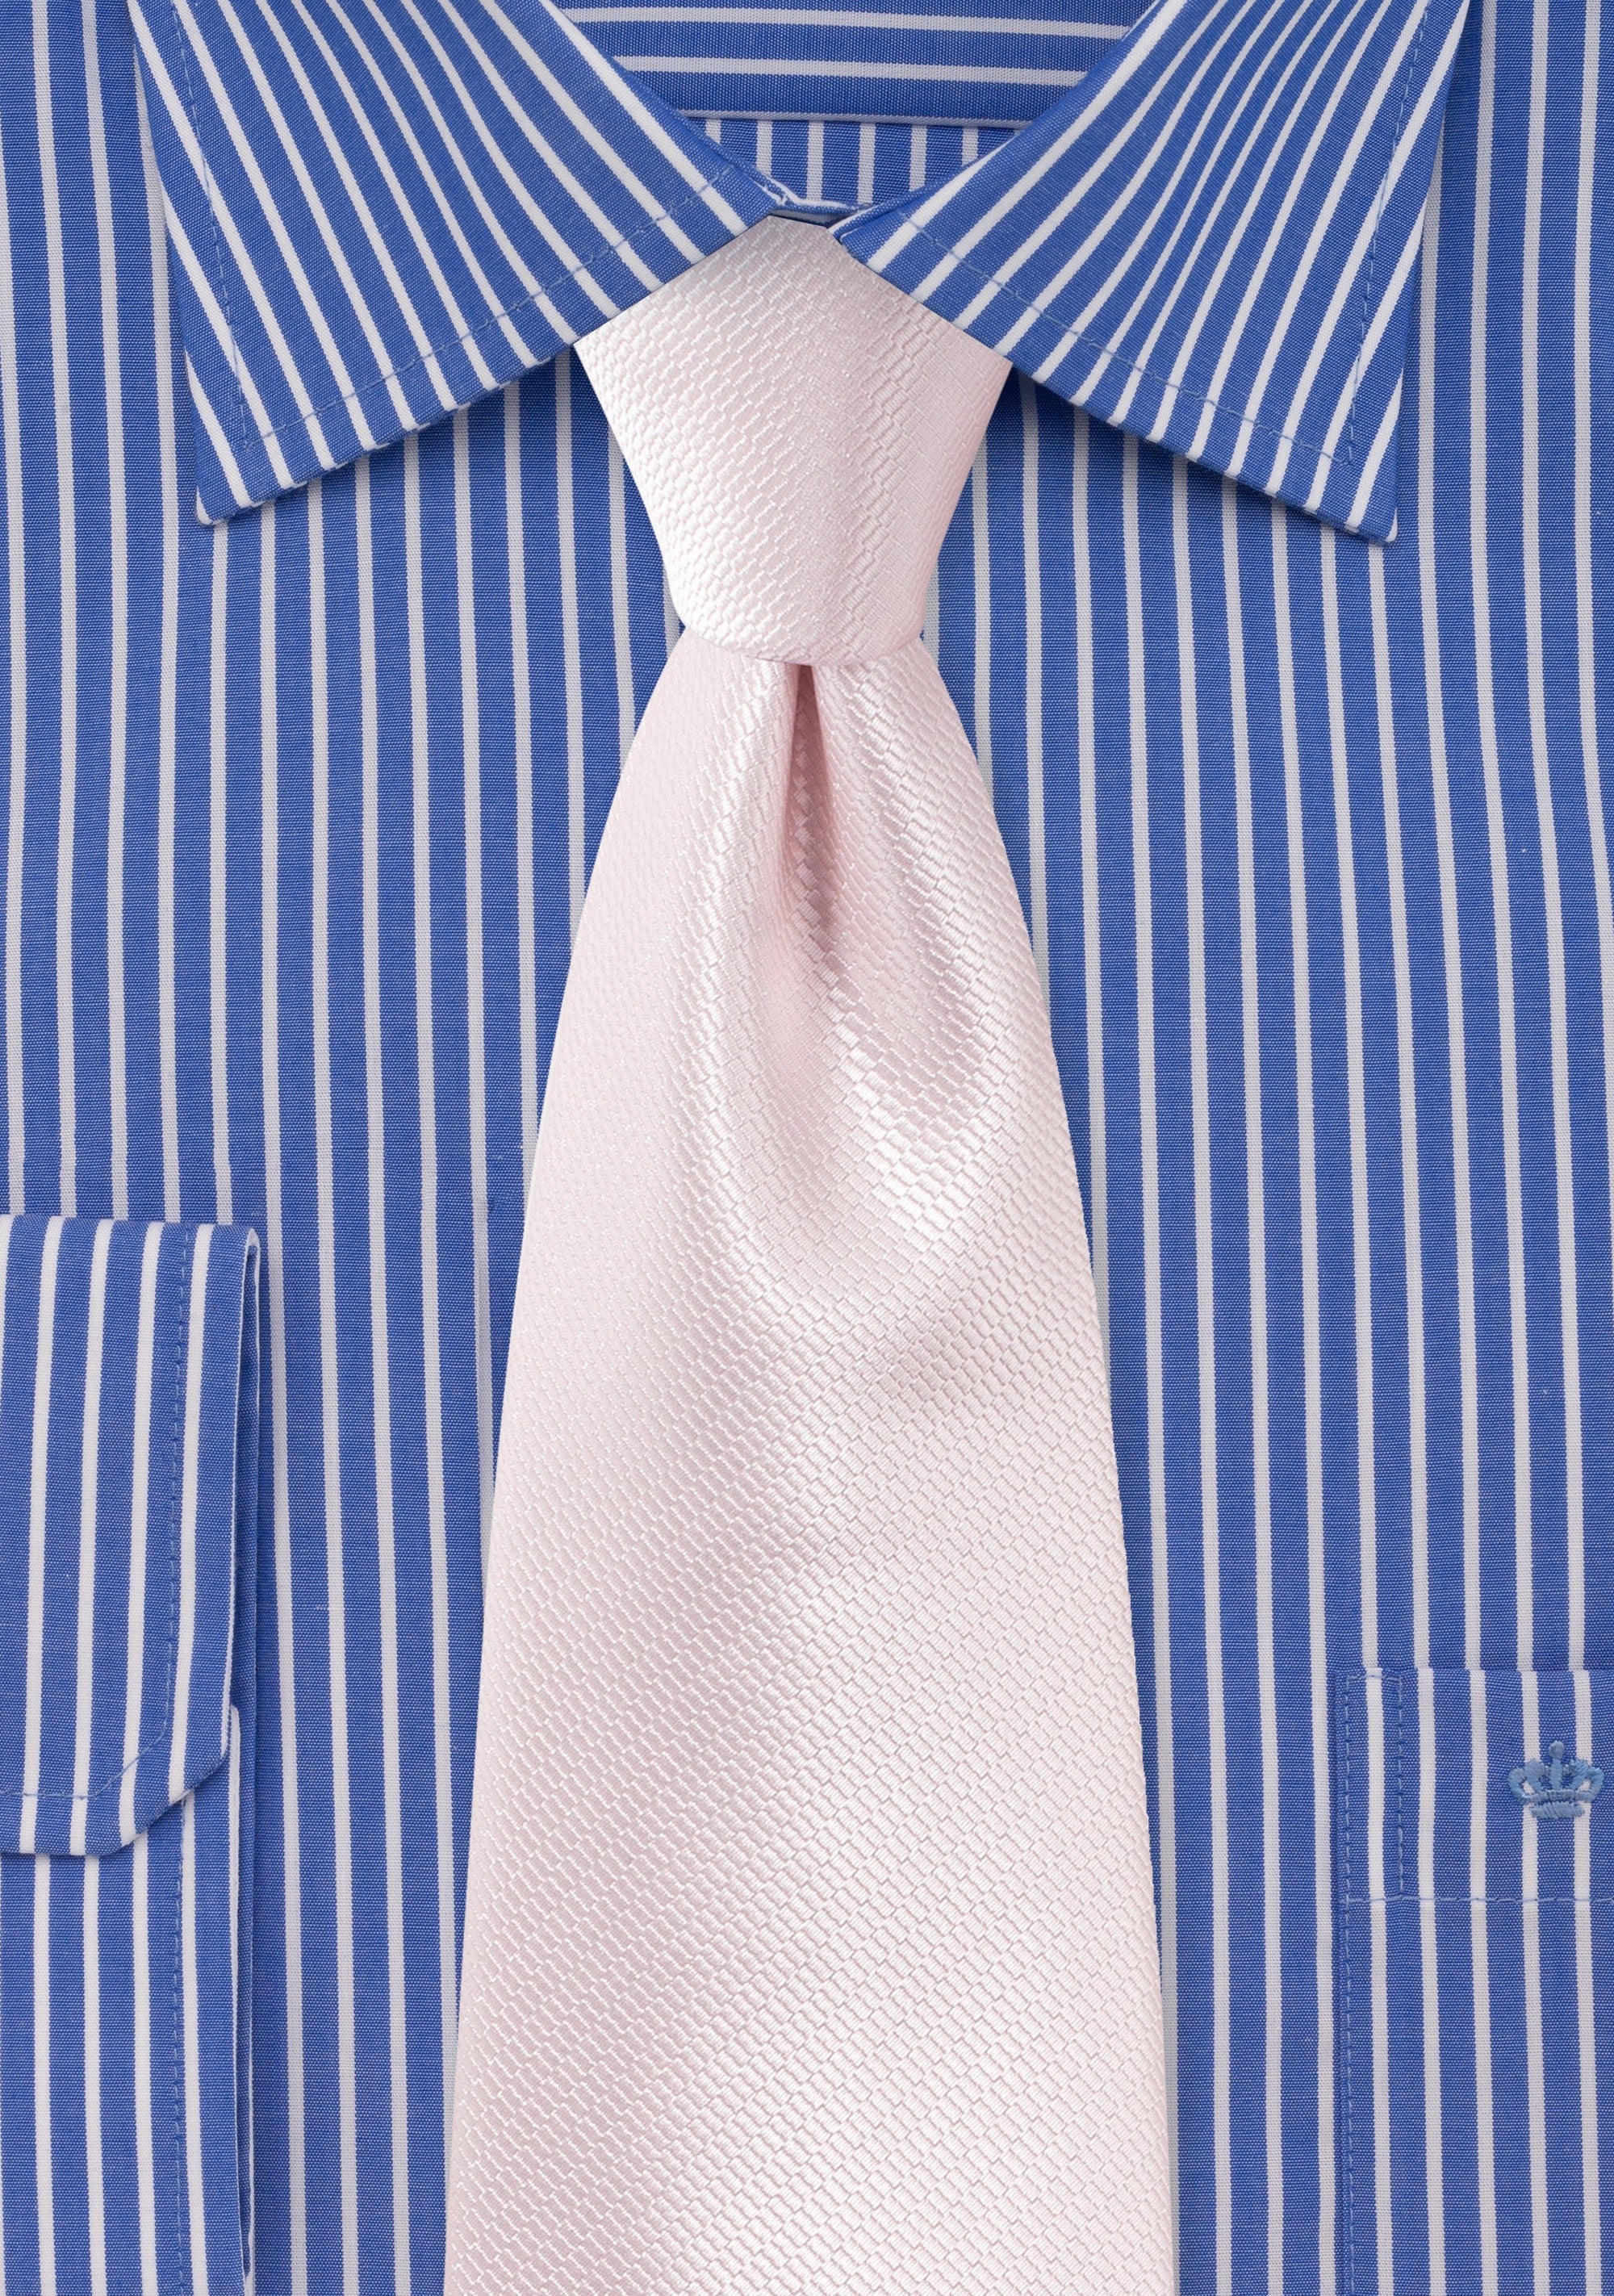 Blush Pink Small Texture Necktie